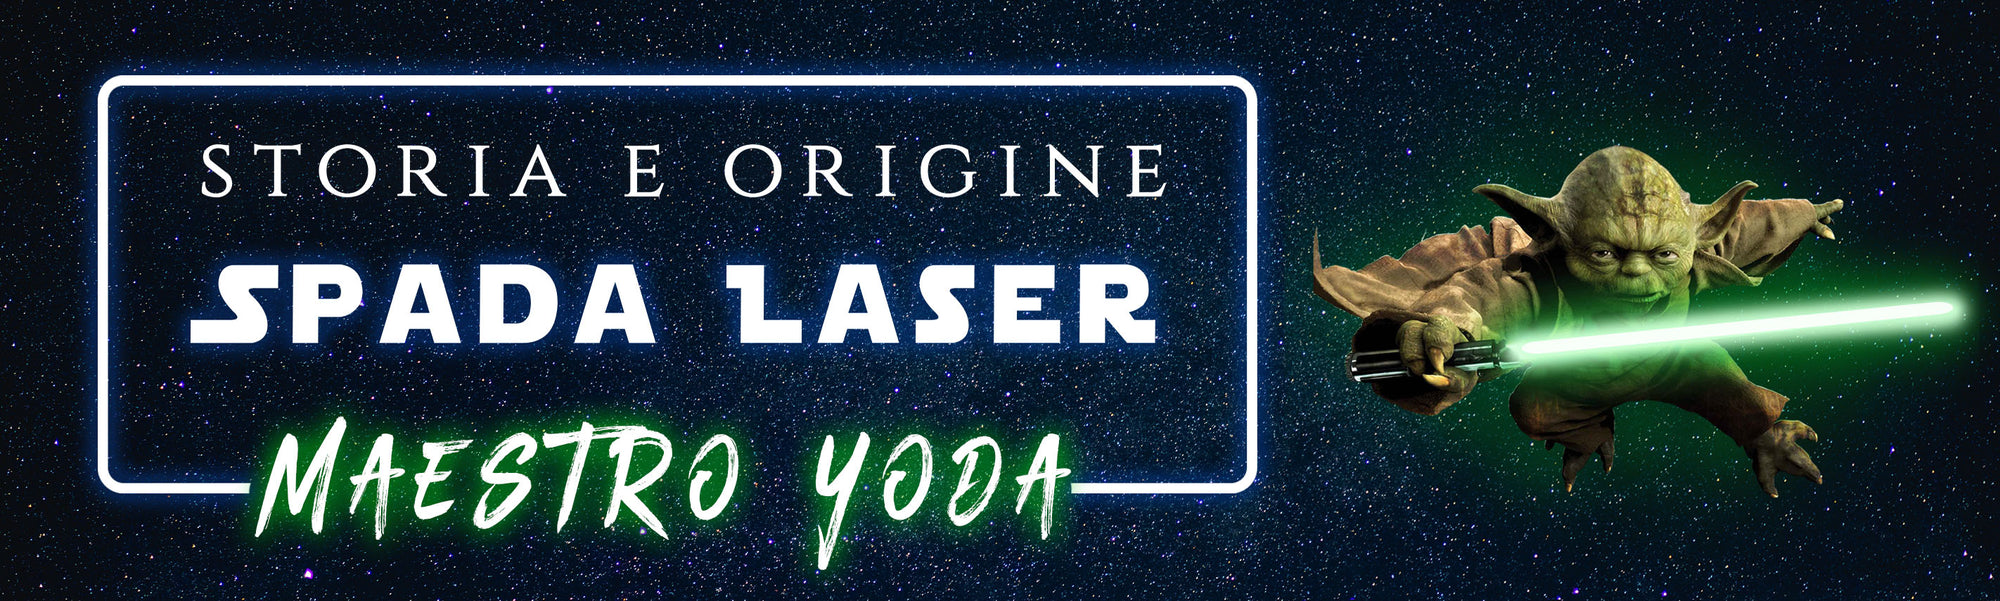 Spada laser verde del Maestro Yoda